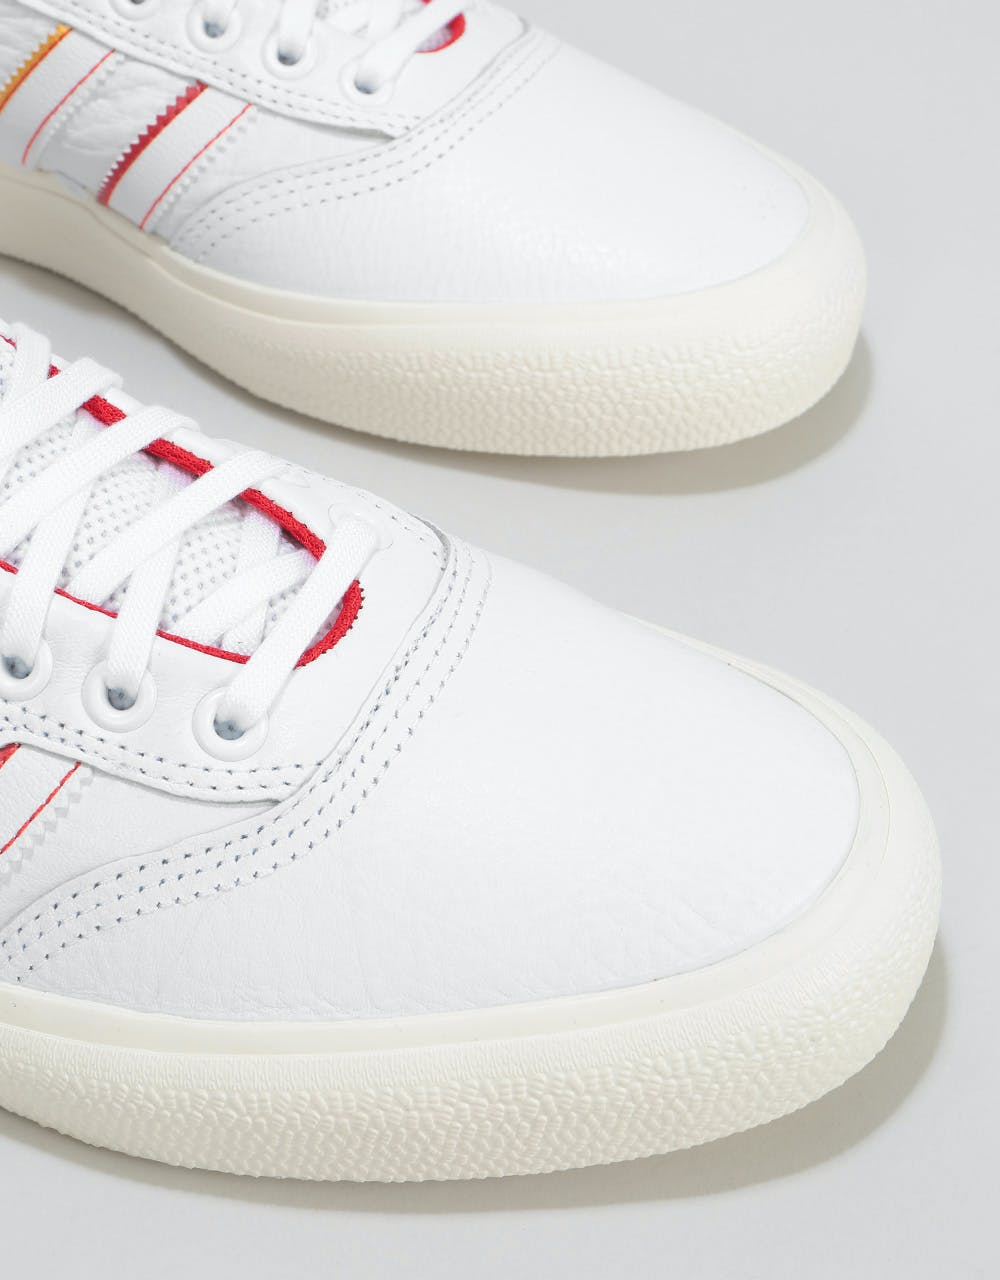 Adidas x Evisen 3MC Skate Shoes - White/Scarlet/Gold Metallic